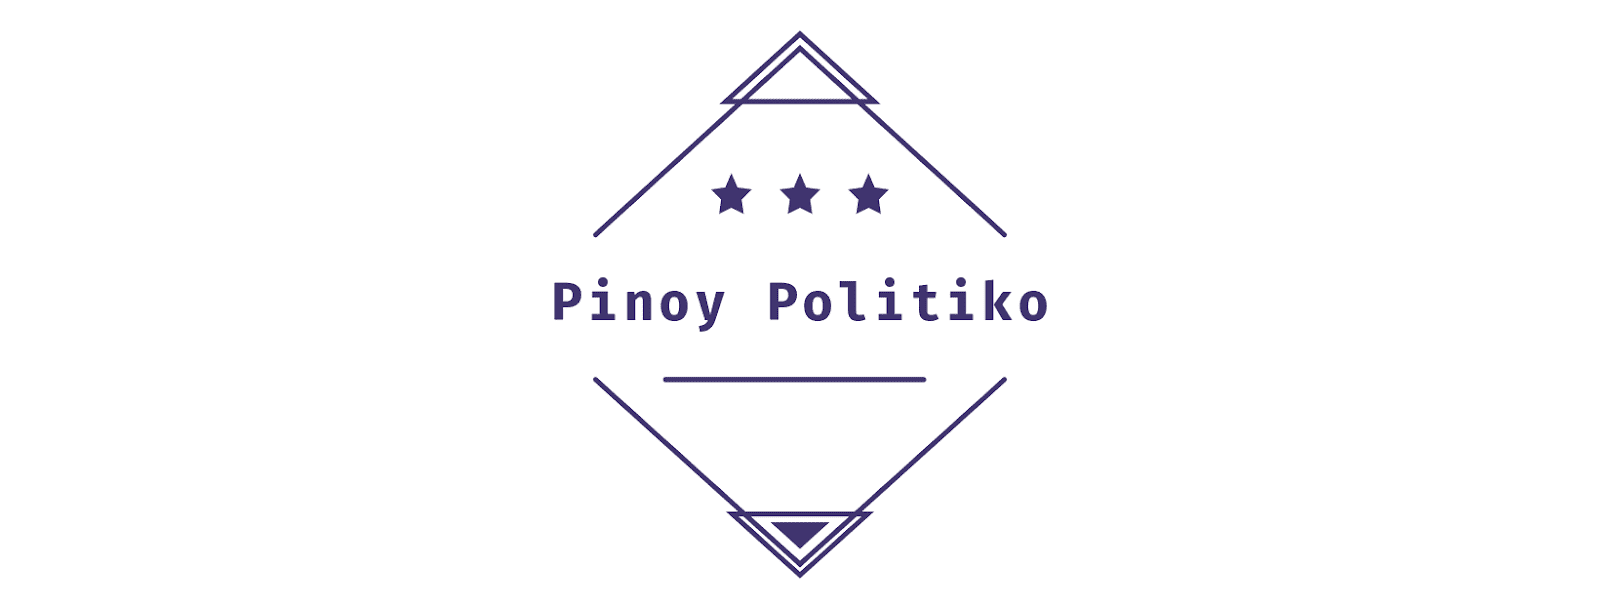 Pinoy Politiko